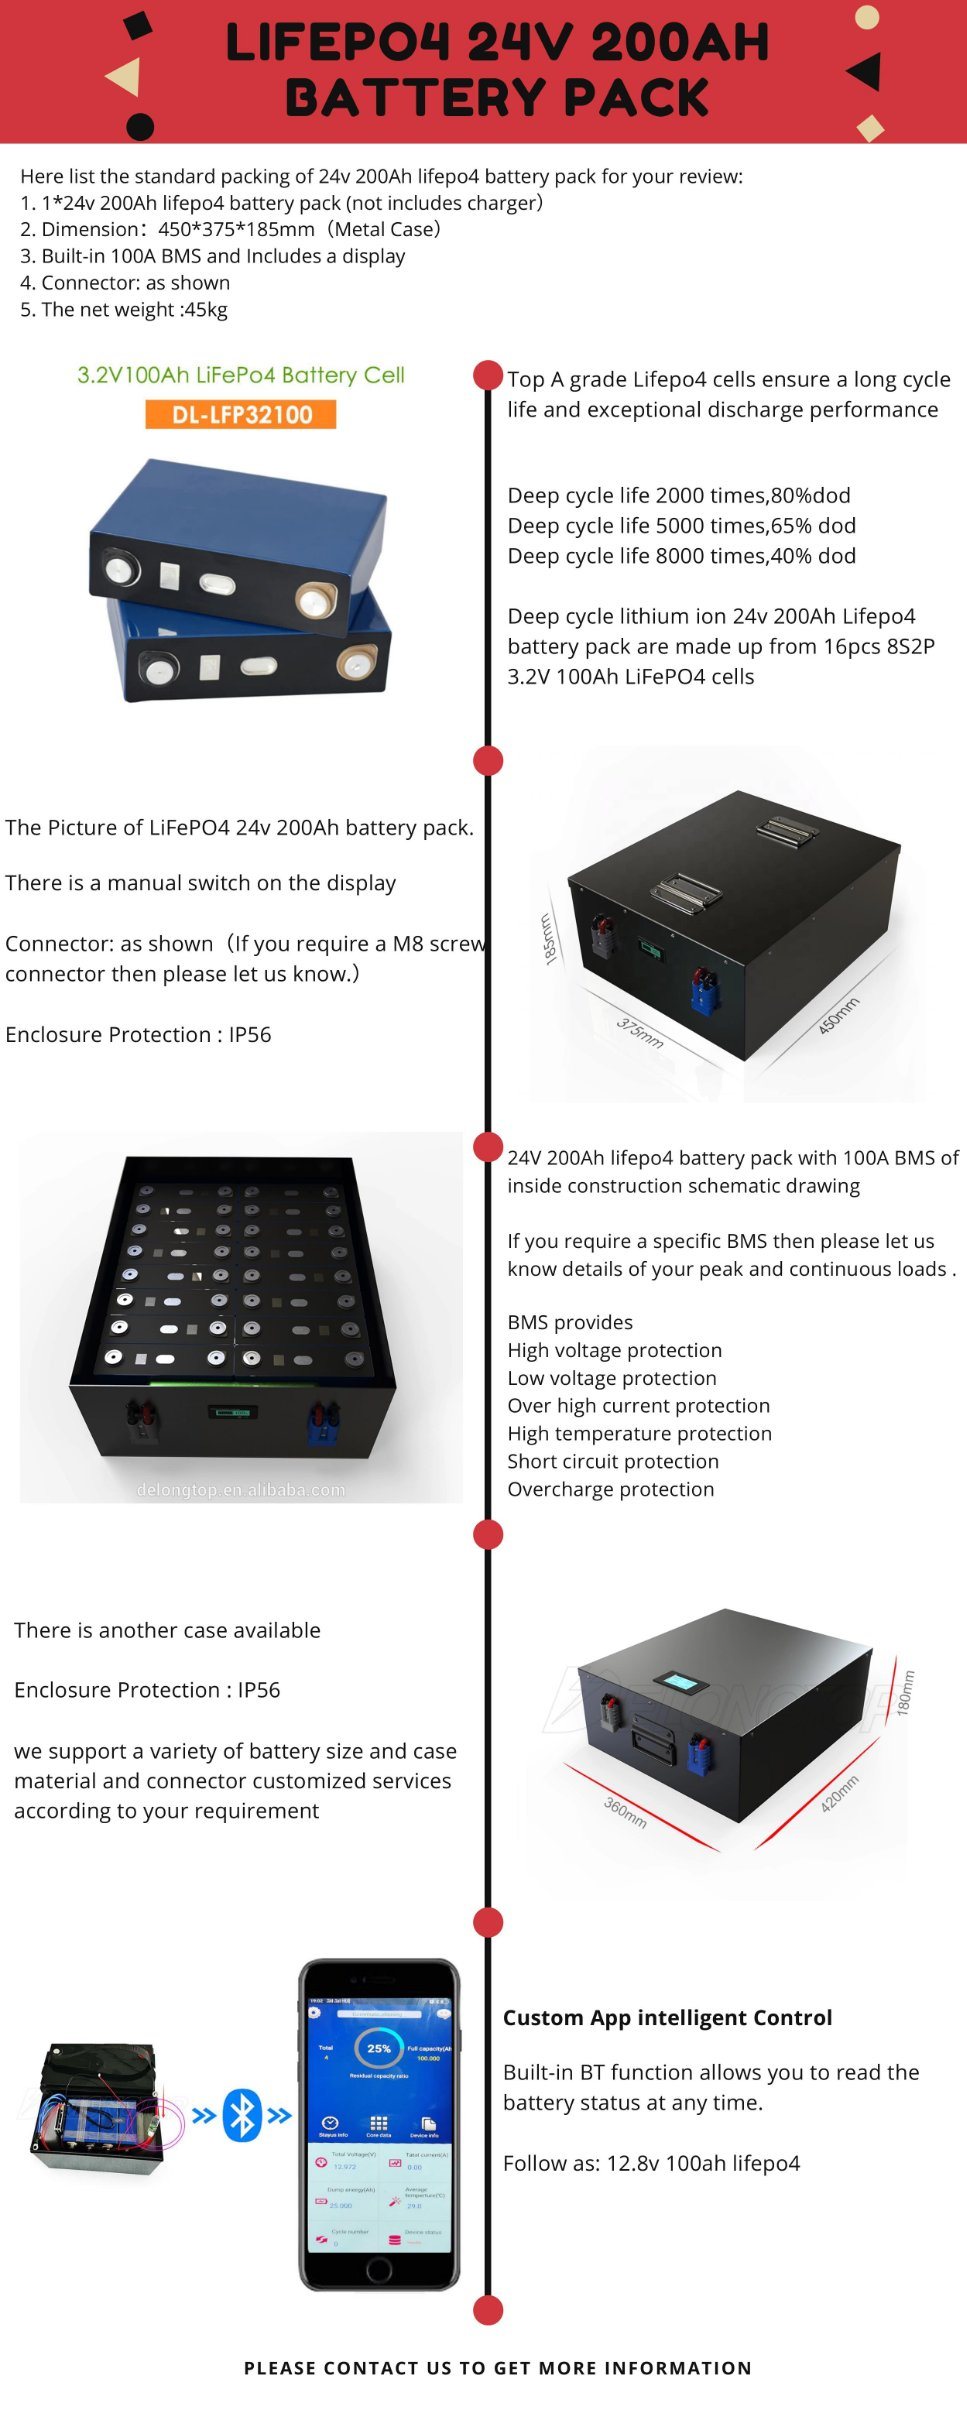 ディープサイクルリチウム太陽電池24V 200AH LiFePO4バッテリーパック